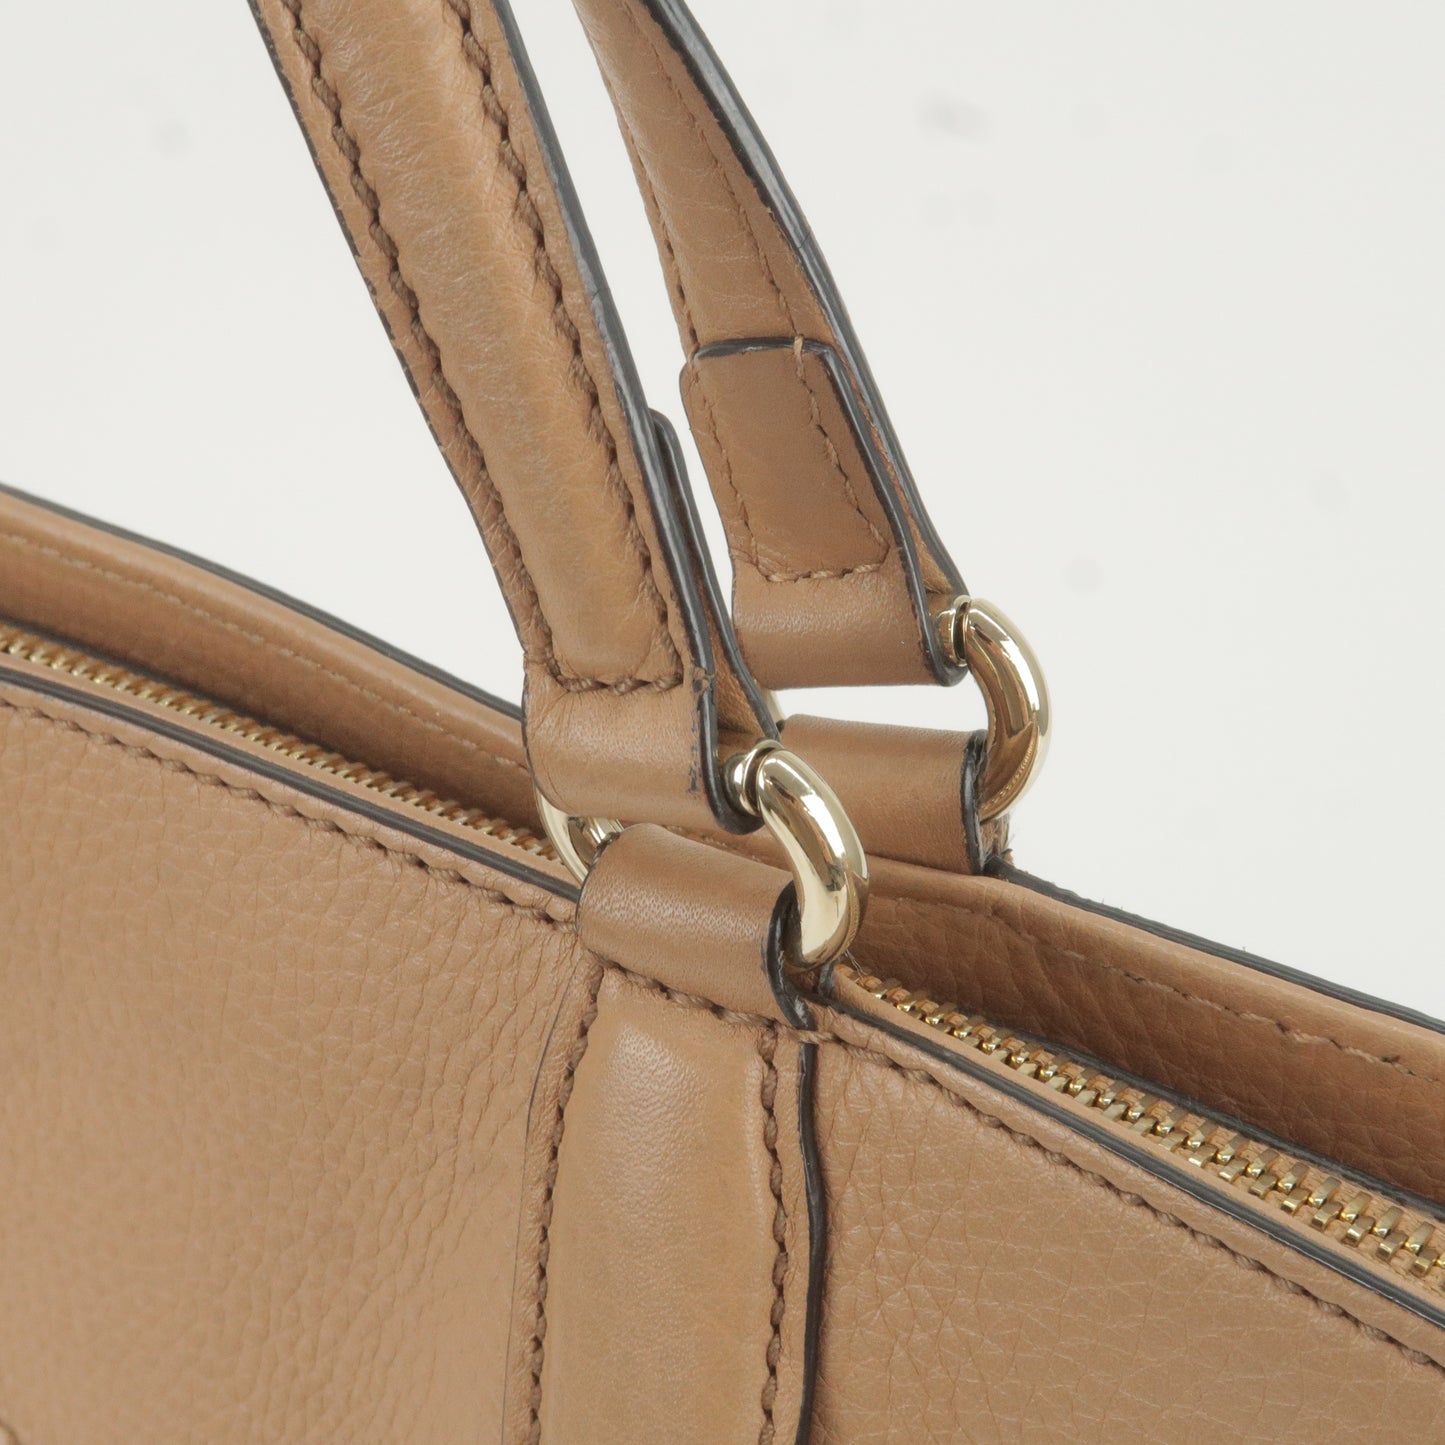 GUCCI SOHO Interlocking GG Leather Shoulder Bag Beige 369176